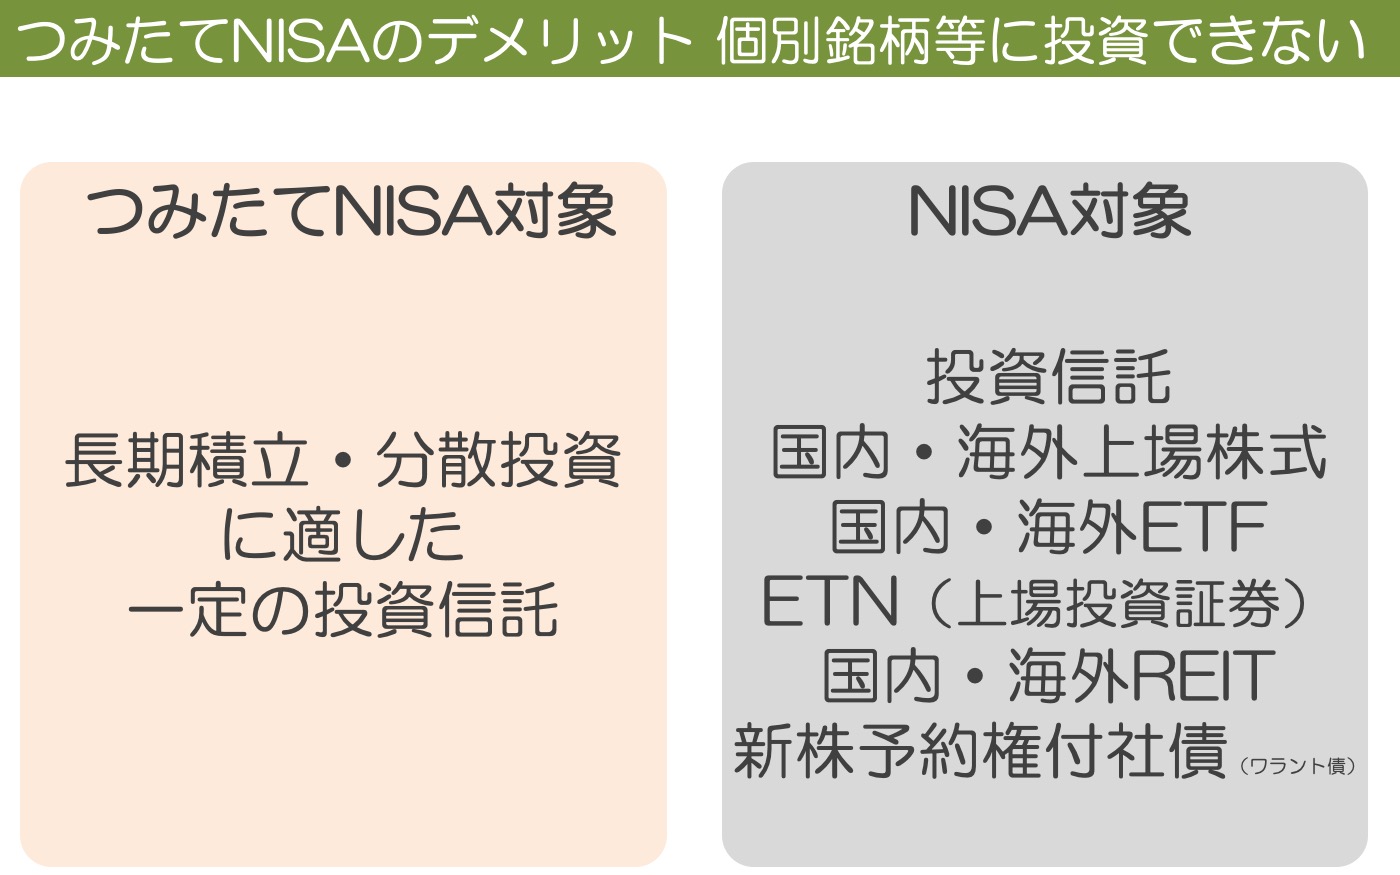 つみたてNISAとNISA　投資できる金融商品の比較